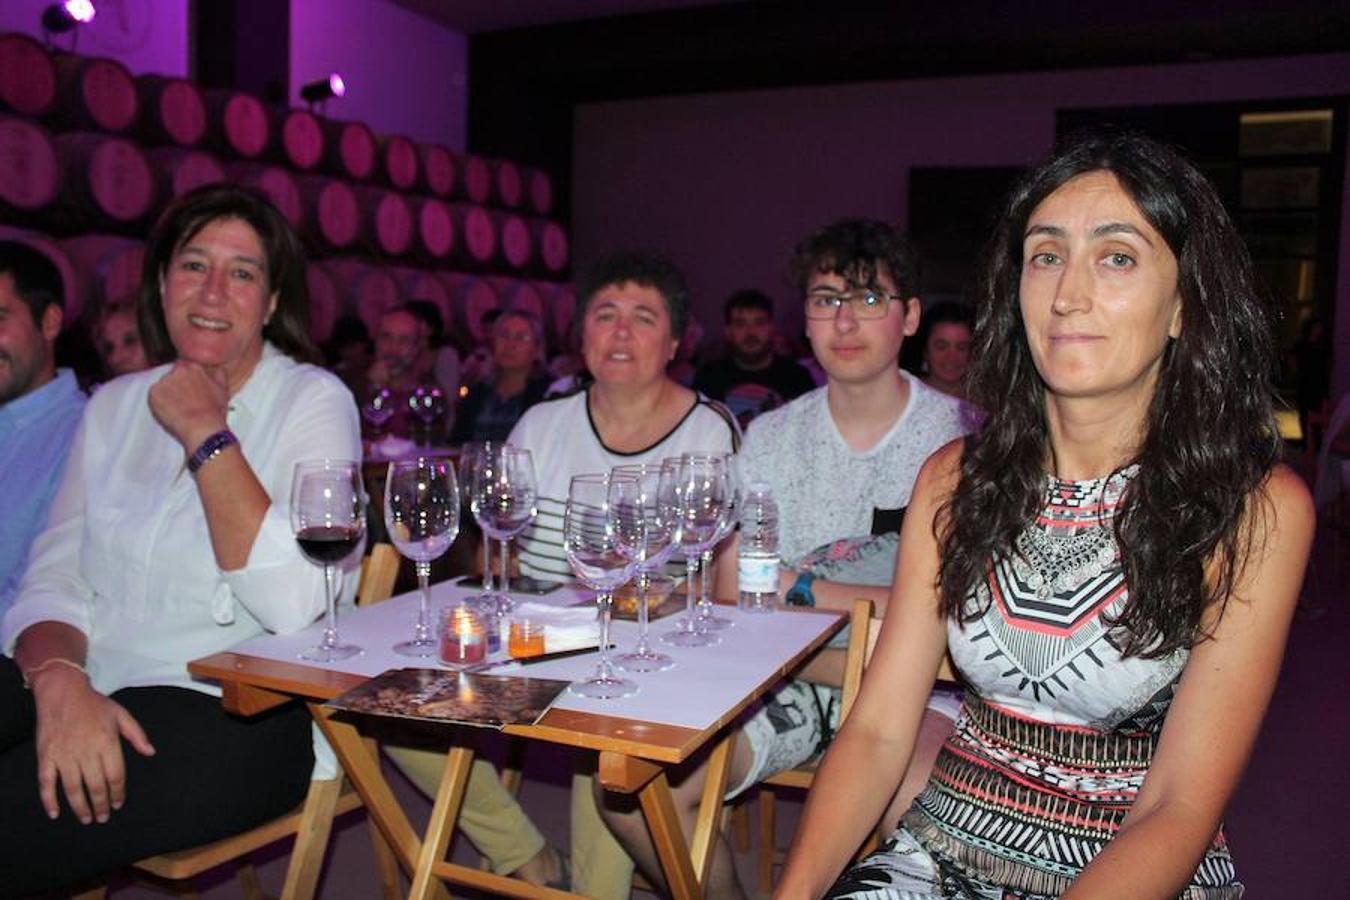 Actuaciones musicales con motivo del programa 'El Rioja y lo 5 sentidos' que ayer arrancó en Baños y Alcanadre.